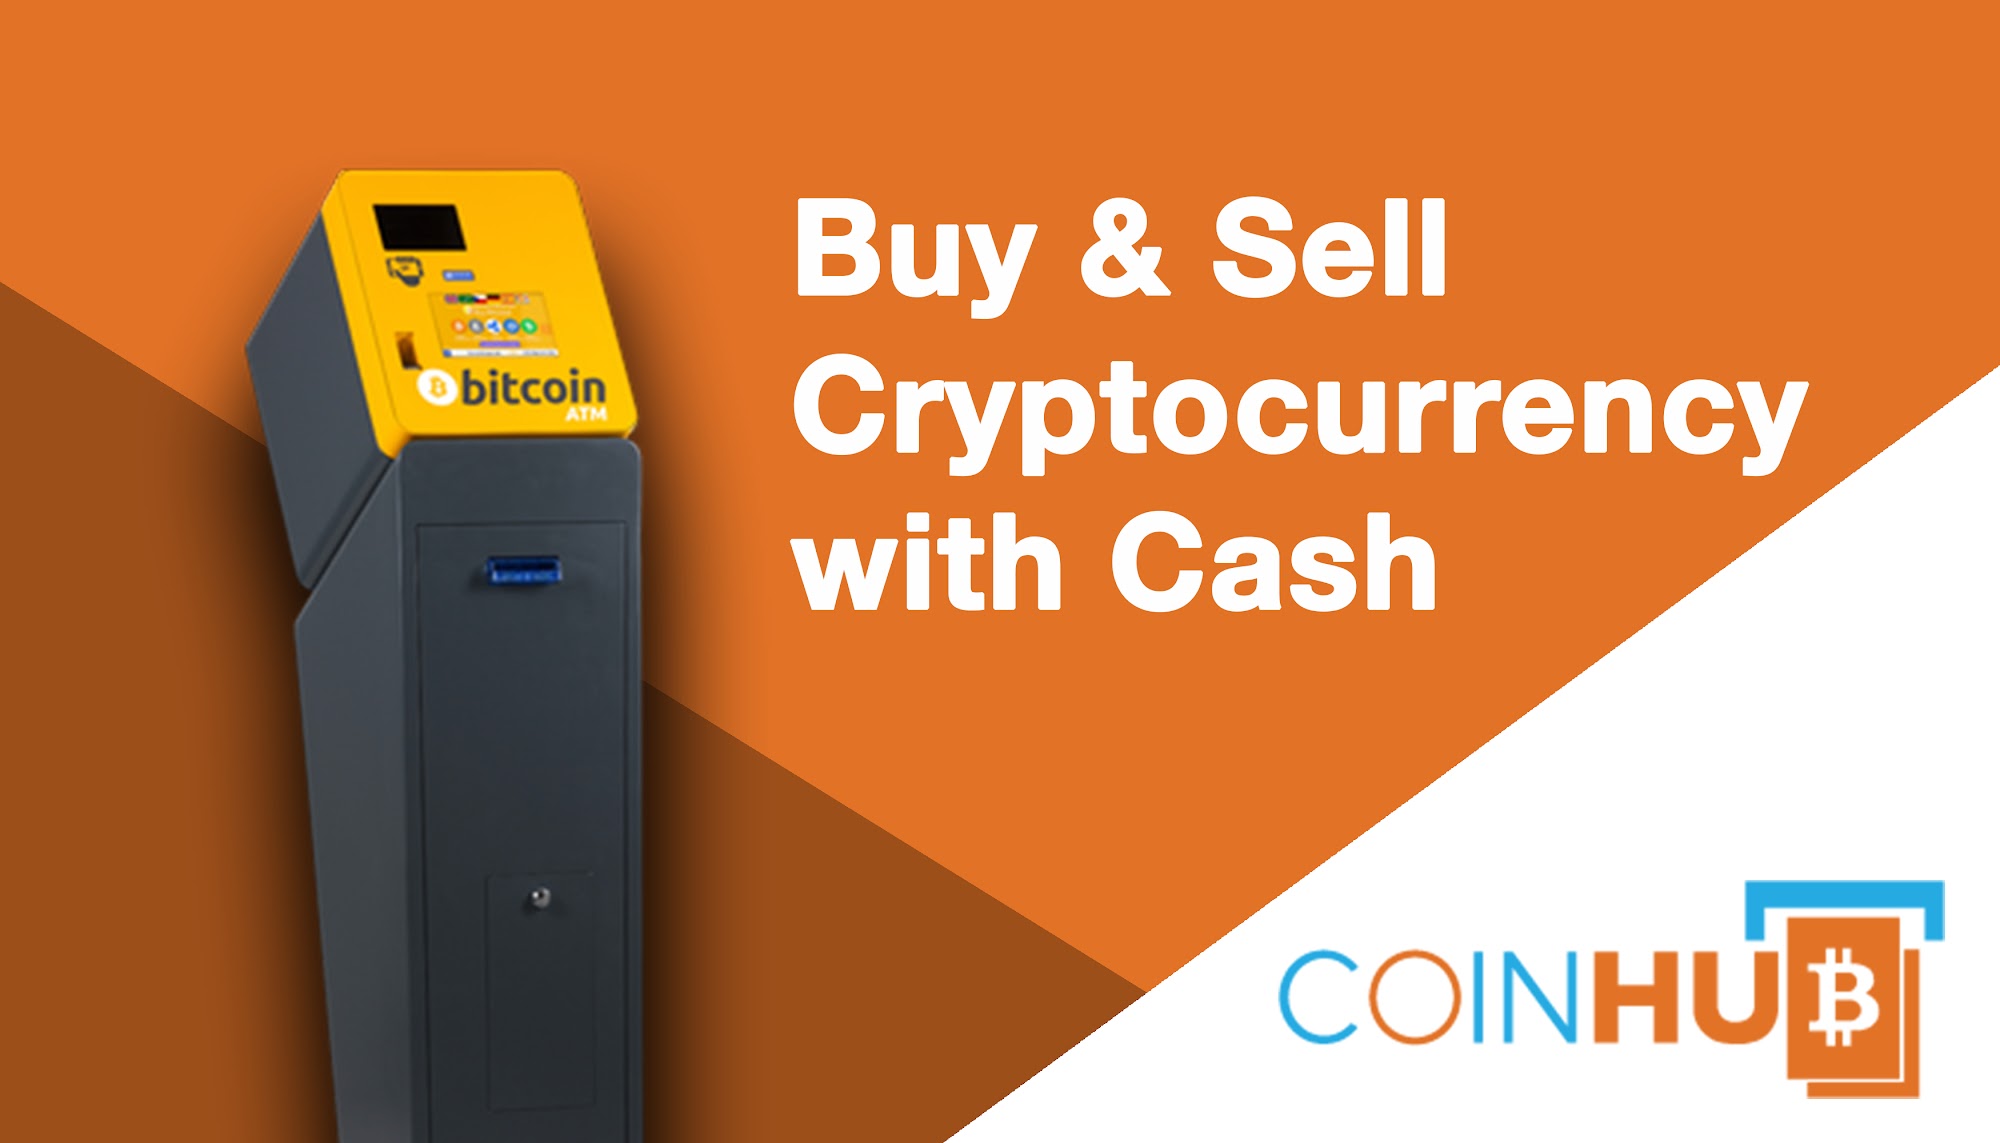 Bitcoin ATM Taylor - Coinhub